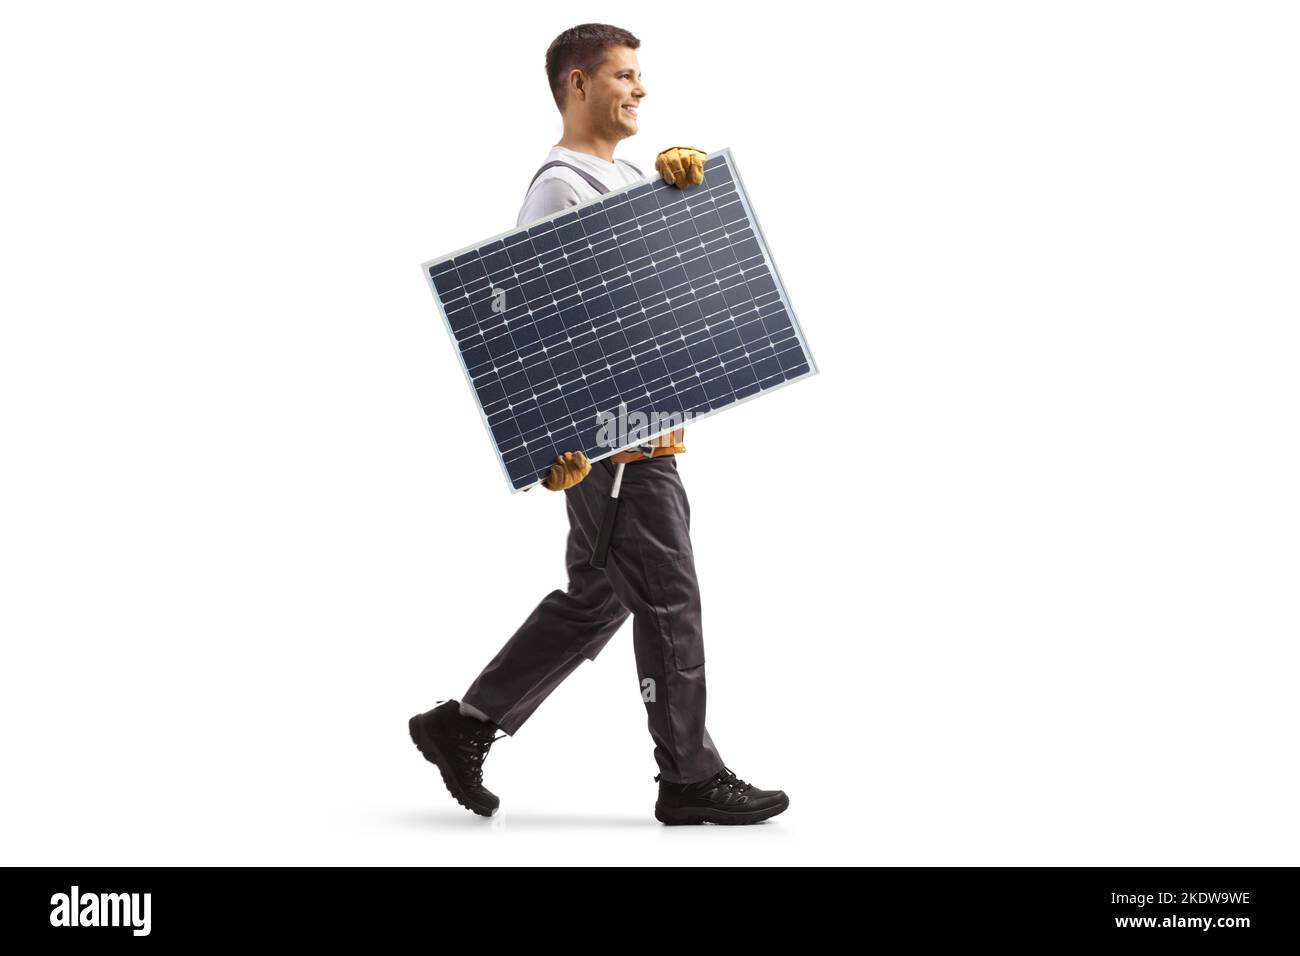 Foto a profilo completo di un tecnico che porta un pannello solare e cammina isolato su sfondo bianco Foto Stock